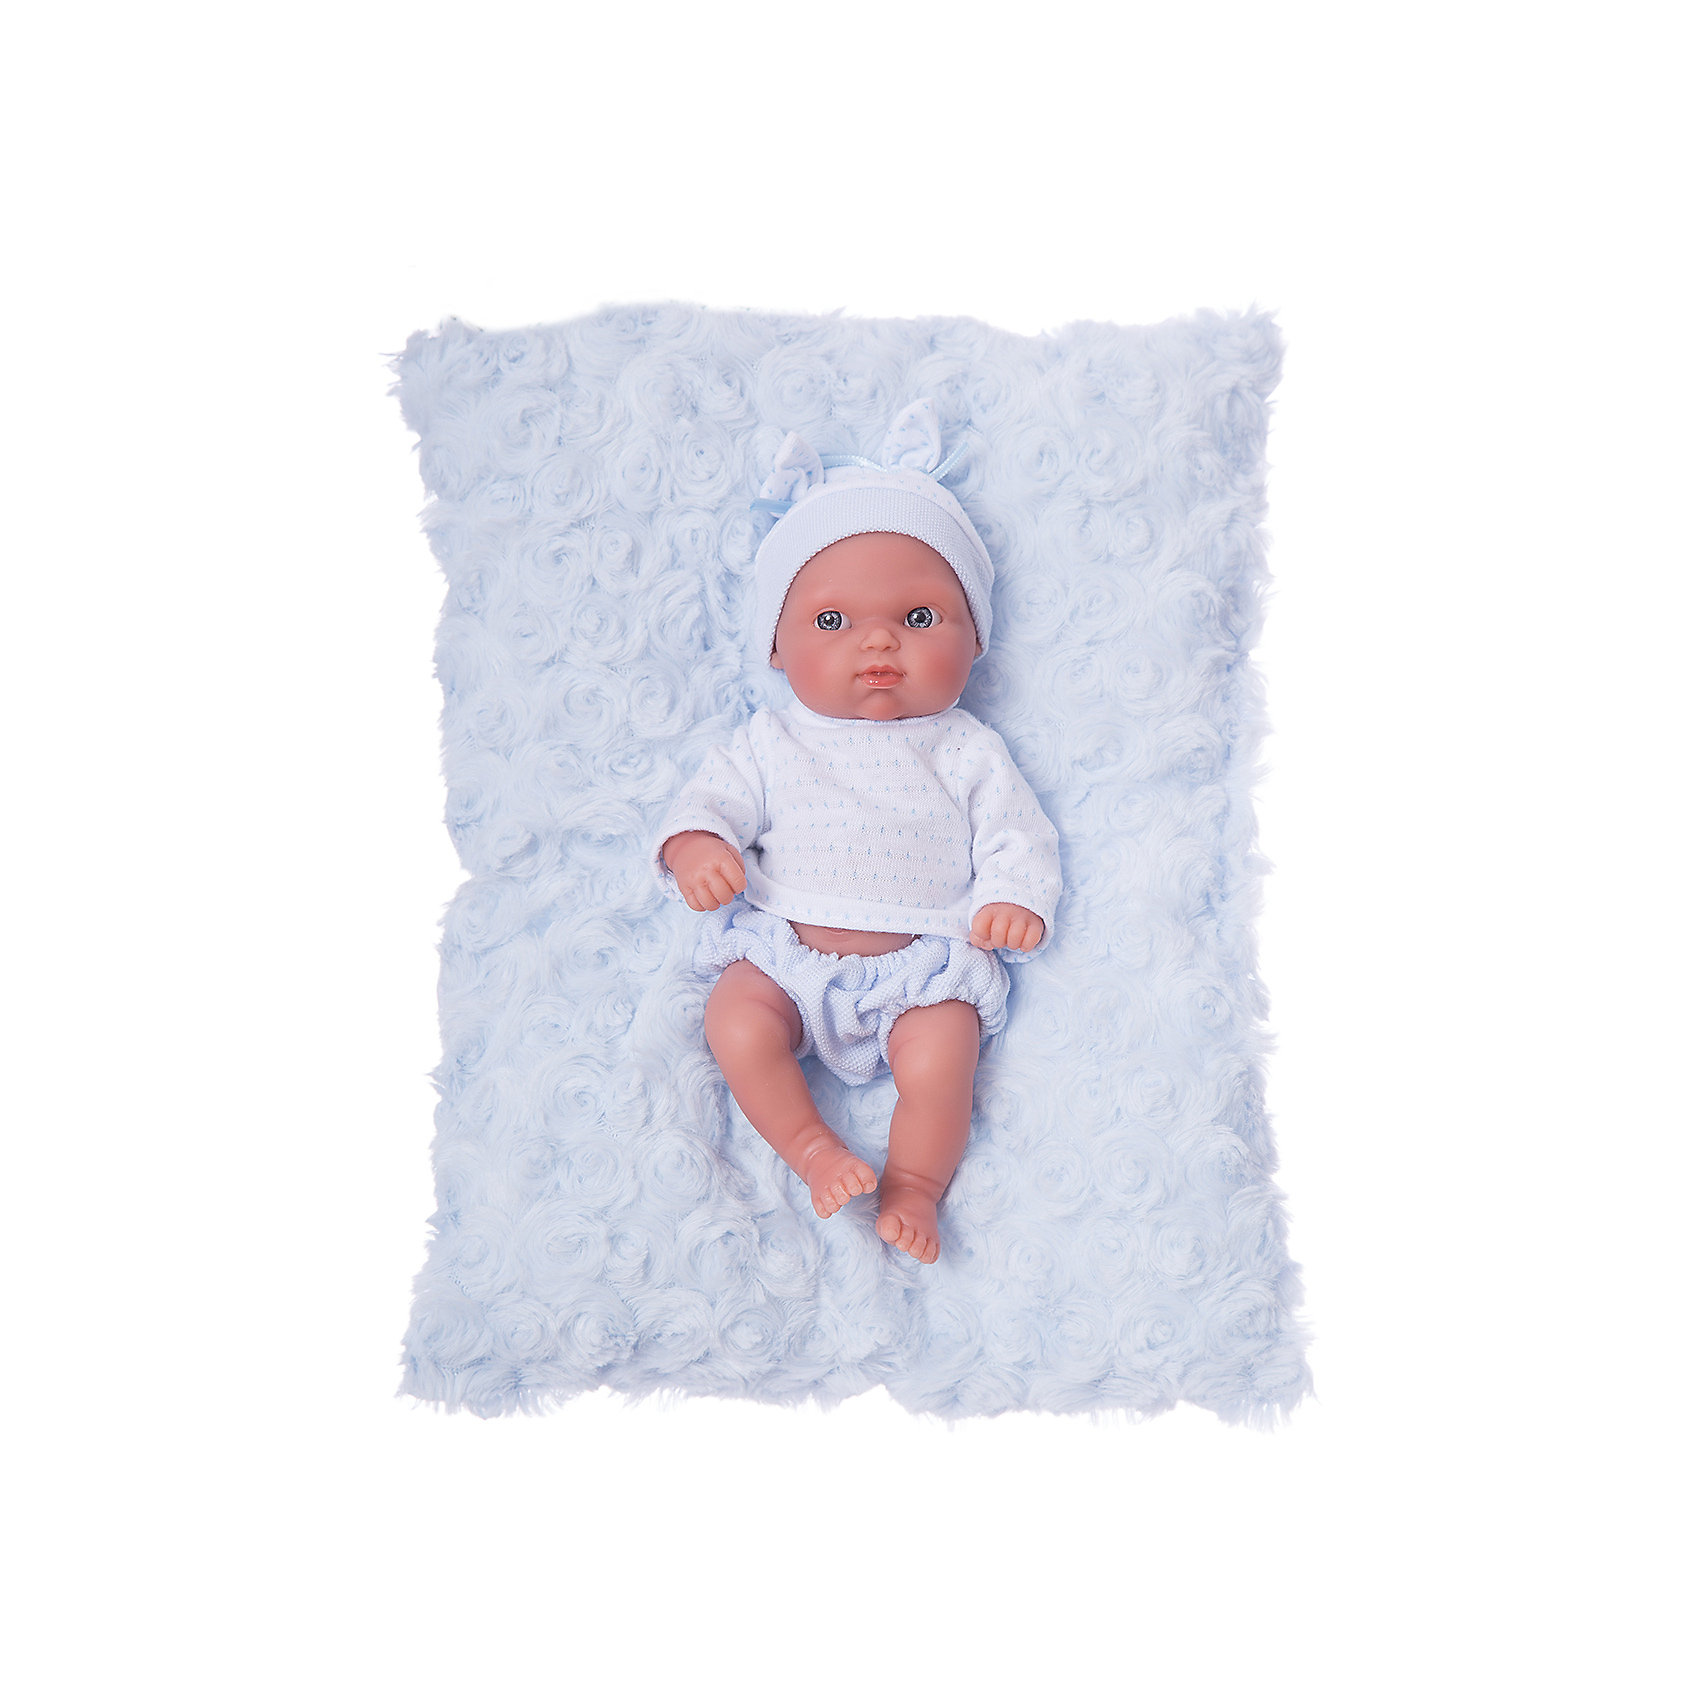 фото Кукла-пупс munecas antonio juan "пепито" на голубом одеялке, 21 см